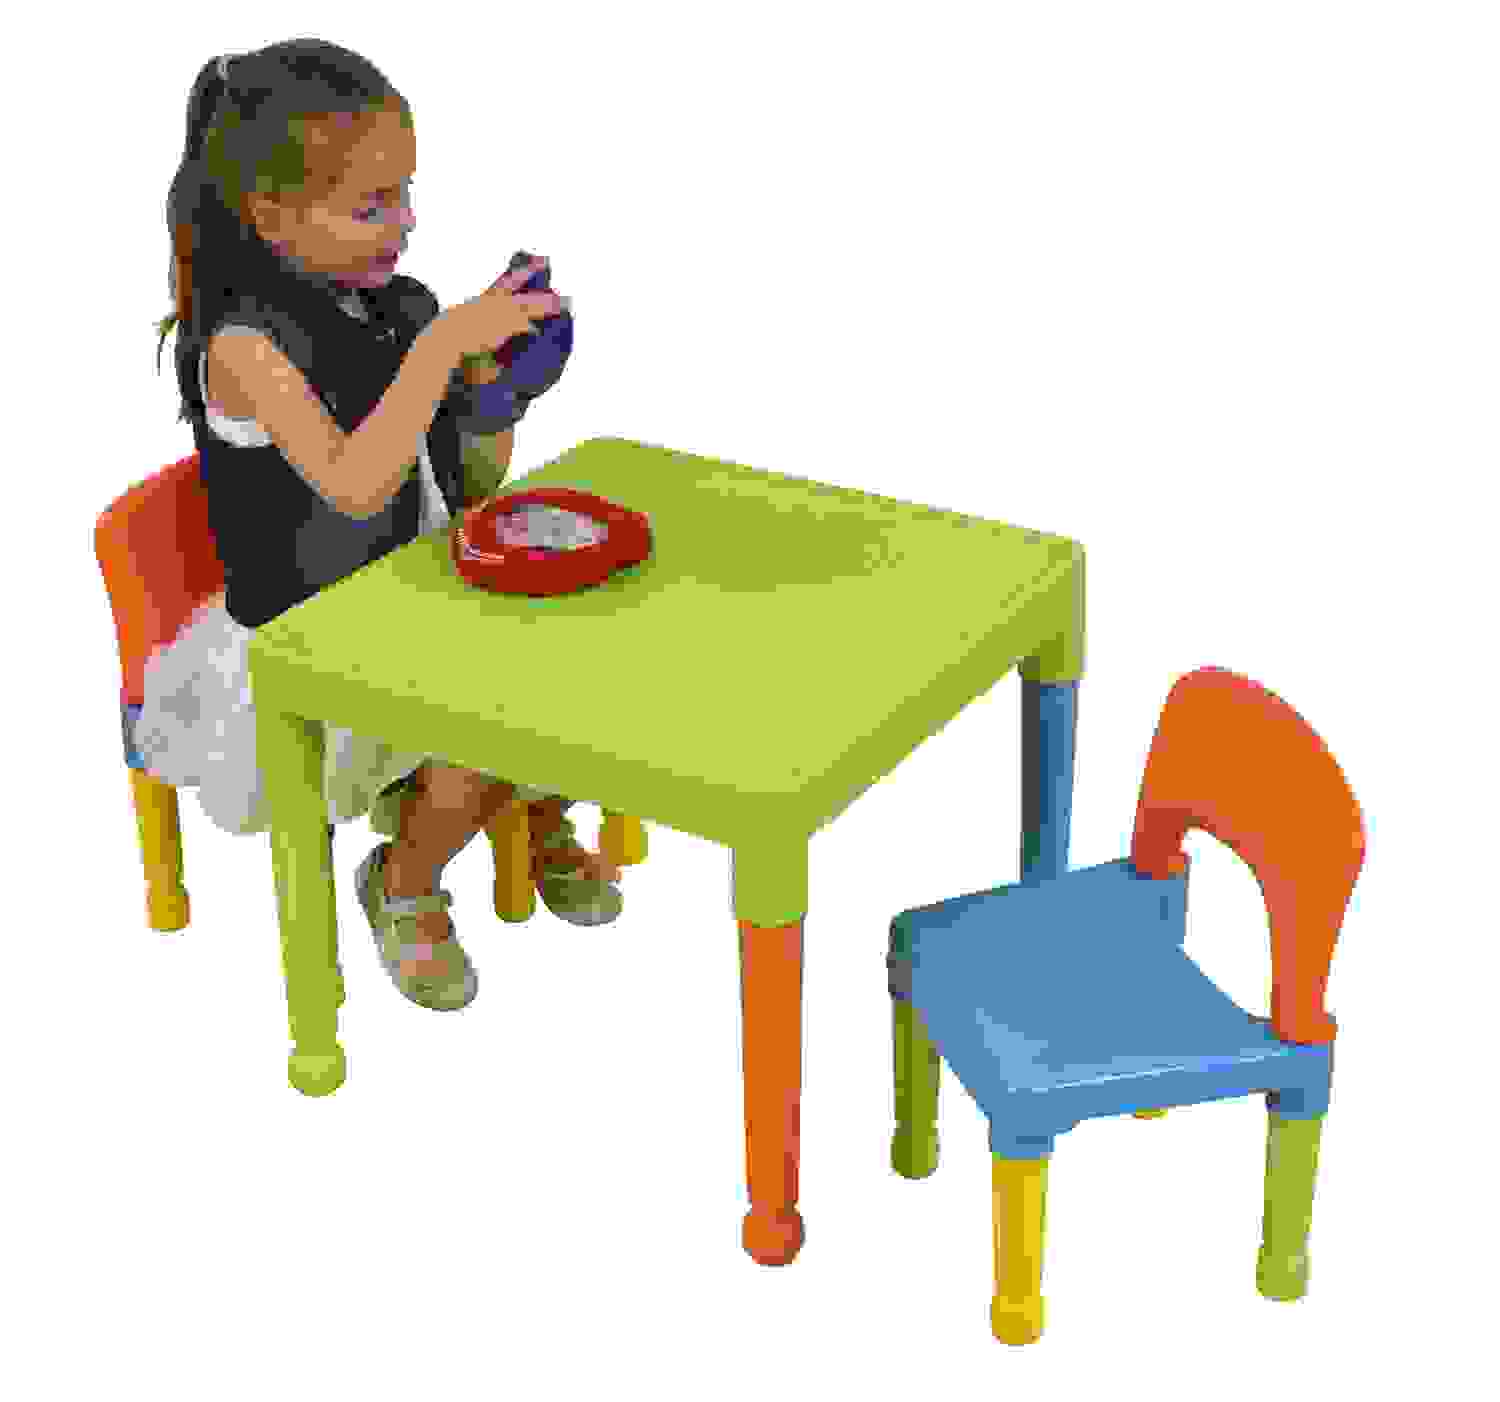 tavolini per bambini